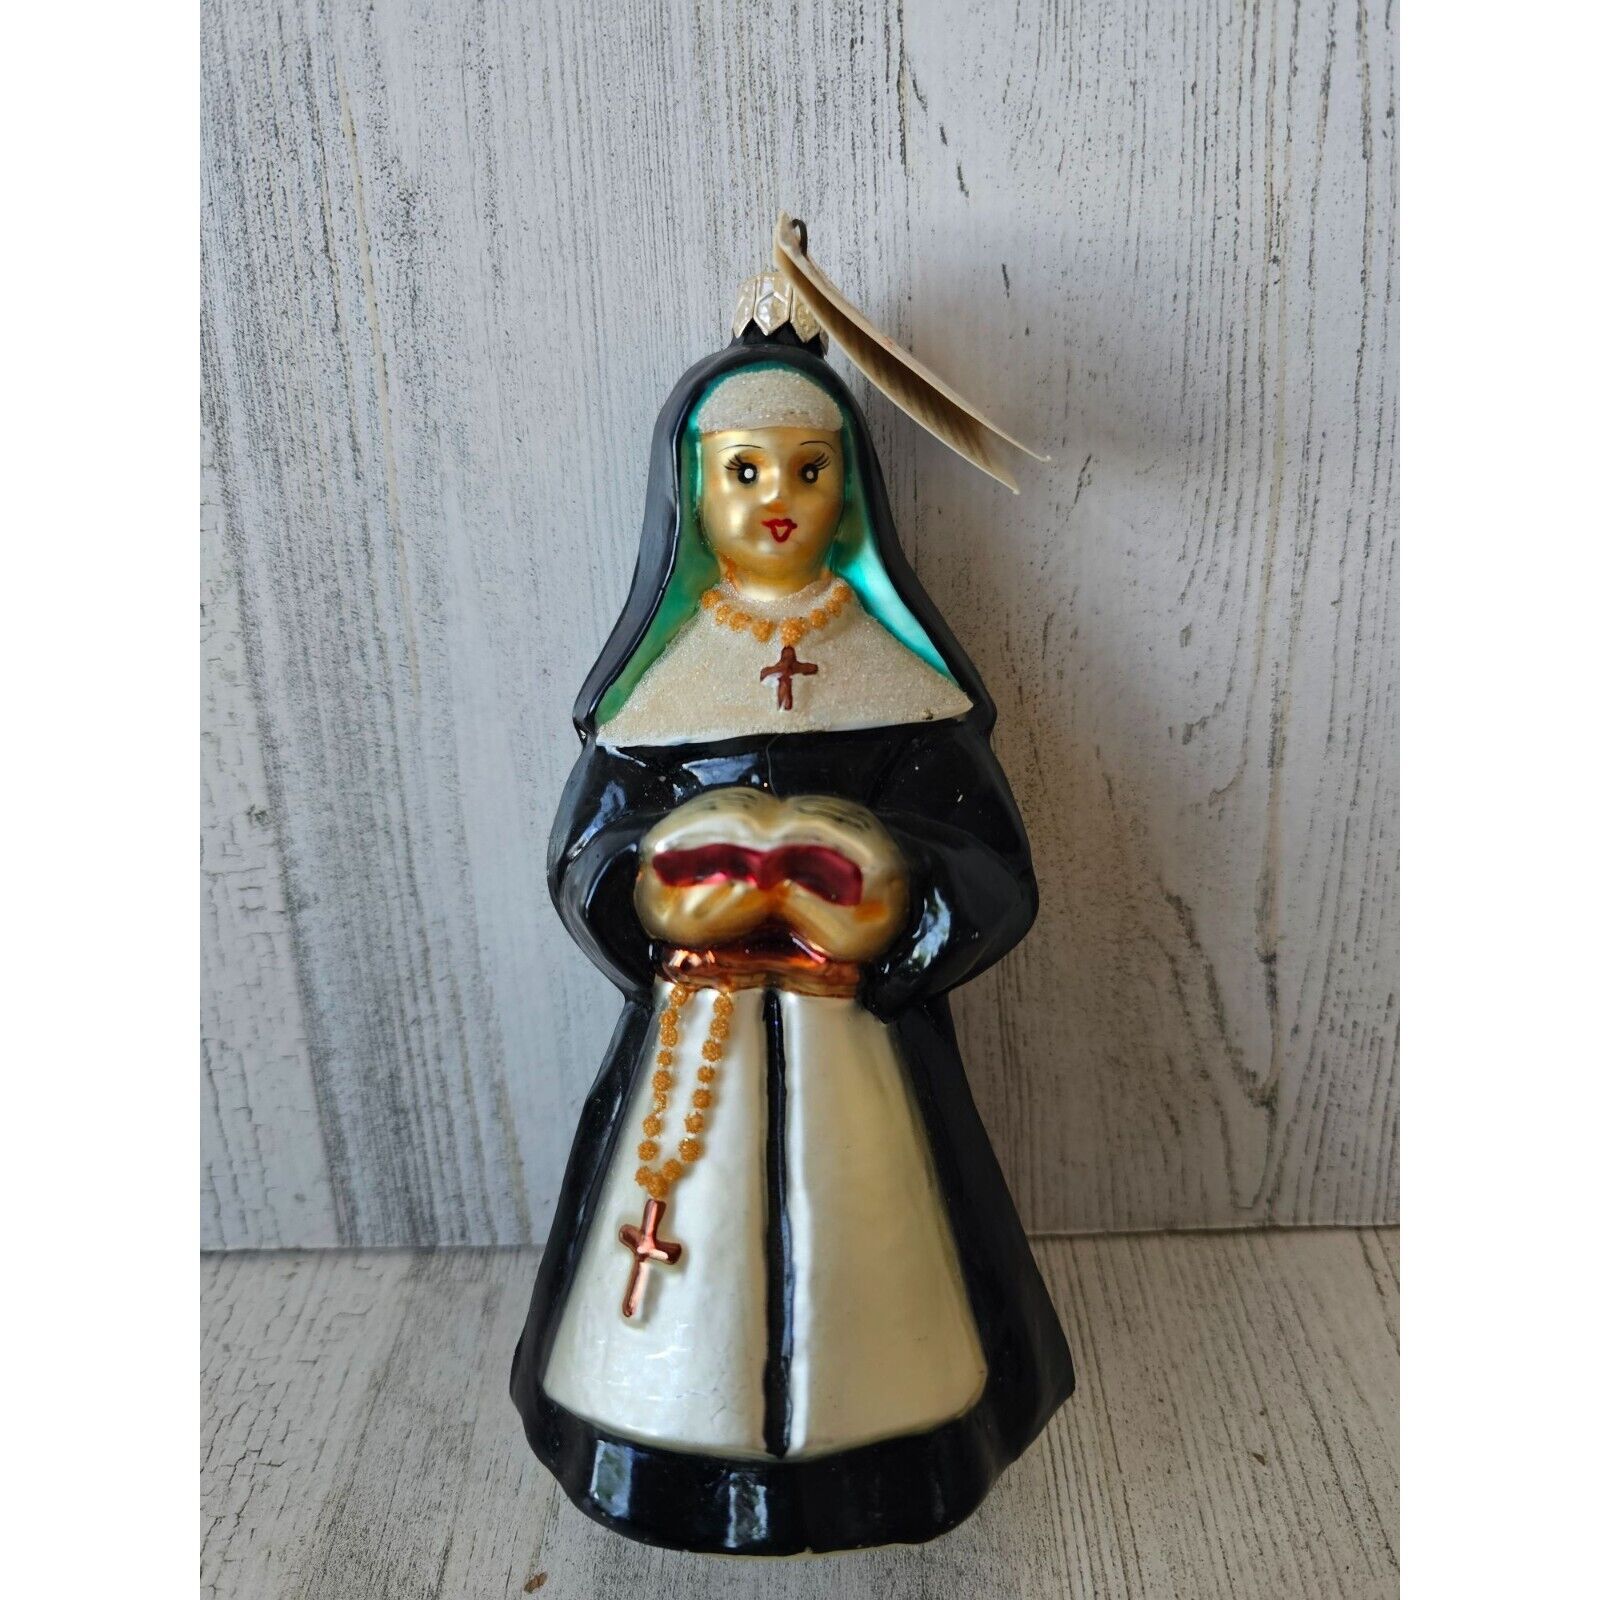 Radko sister act nun-religious ornament Xmas Bible tree vintage